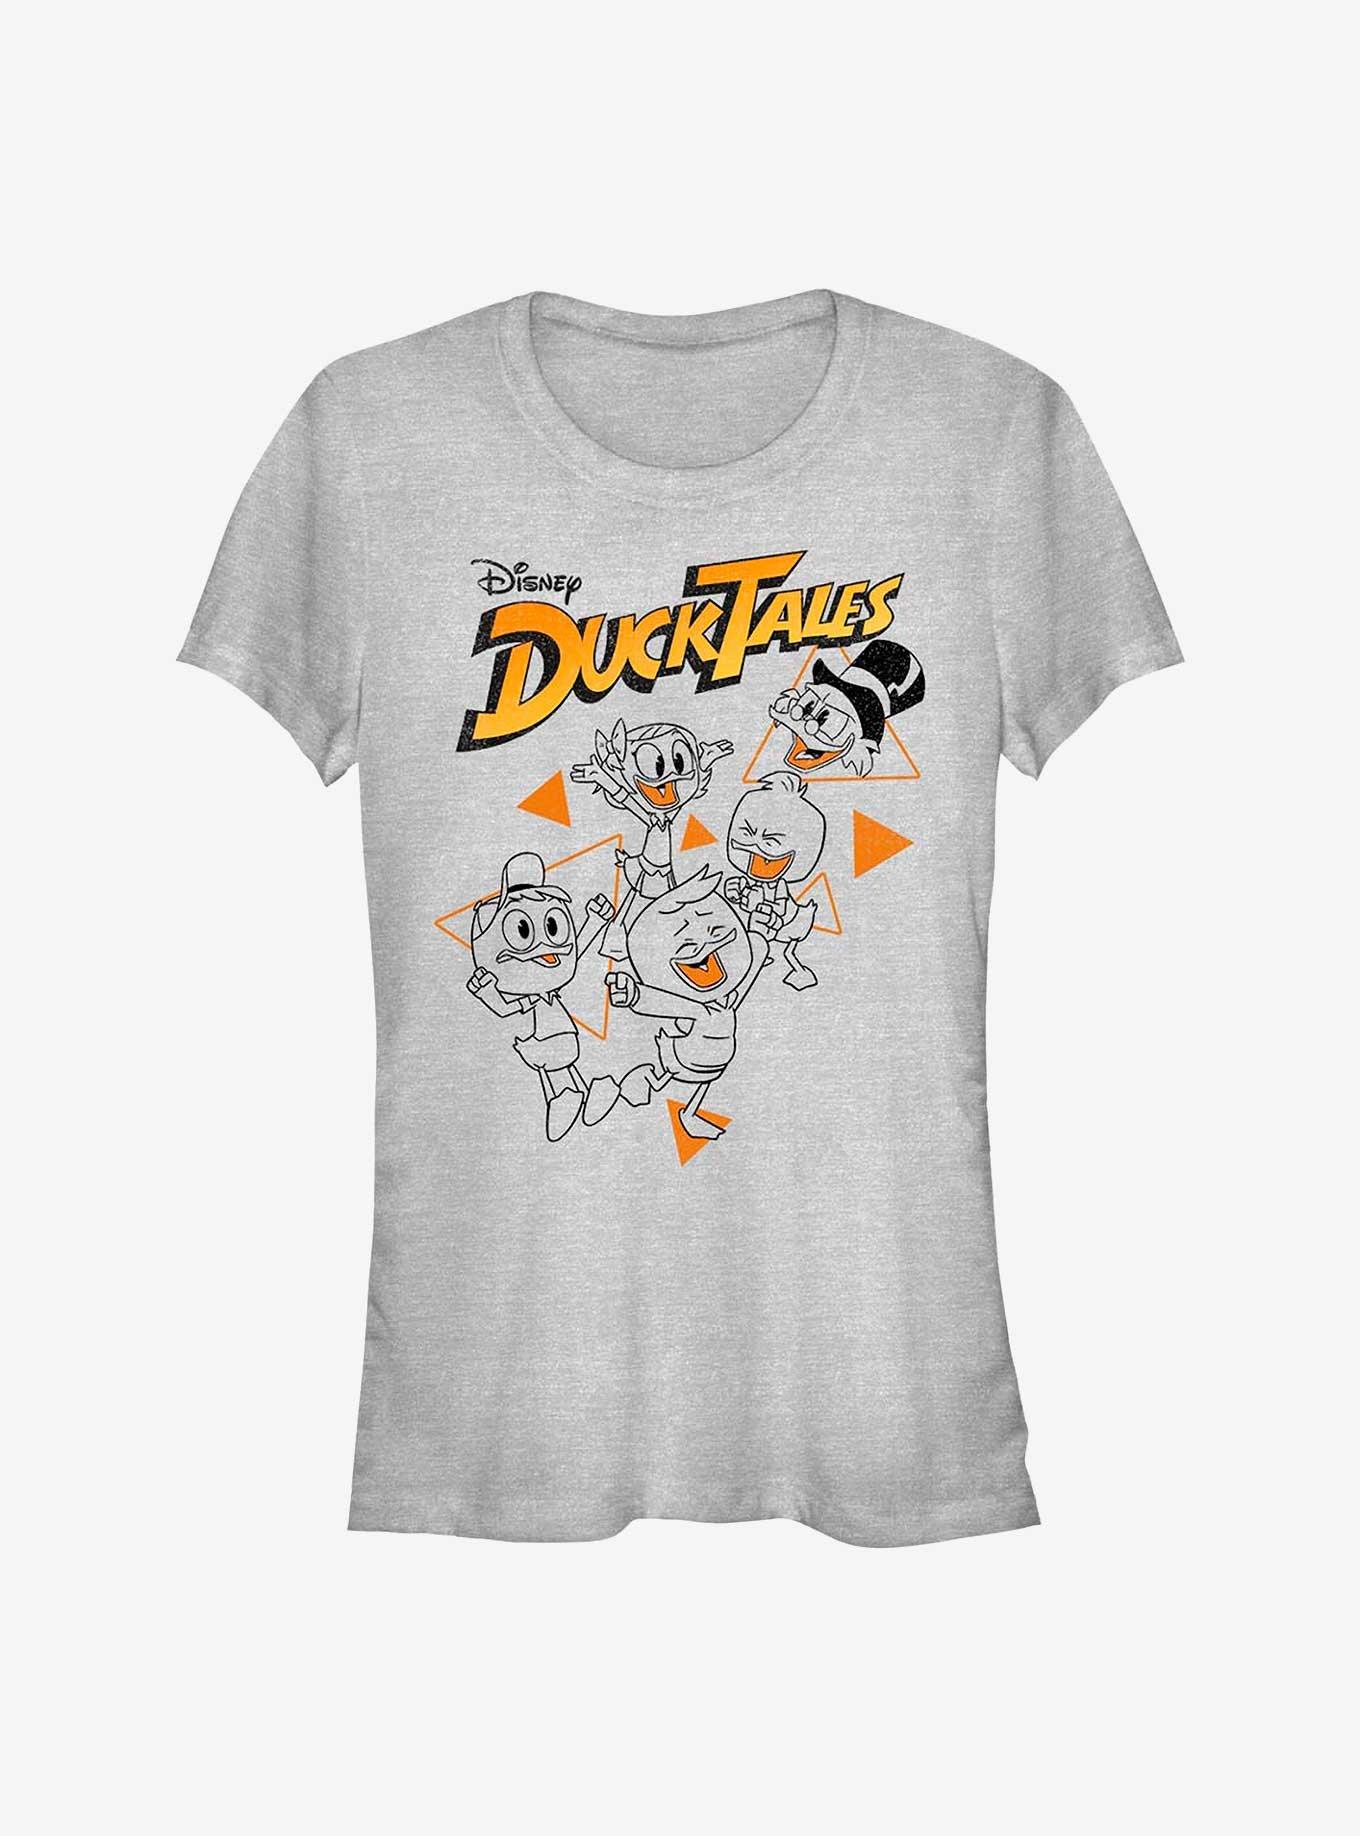 Disney Ducktales Woo Girls T-Shirt, ATH HTR, hi-res